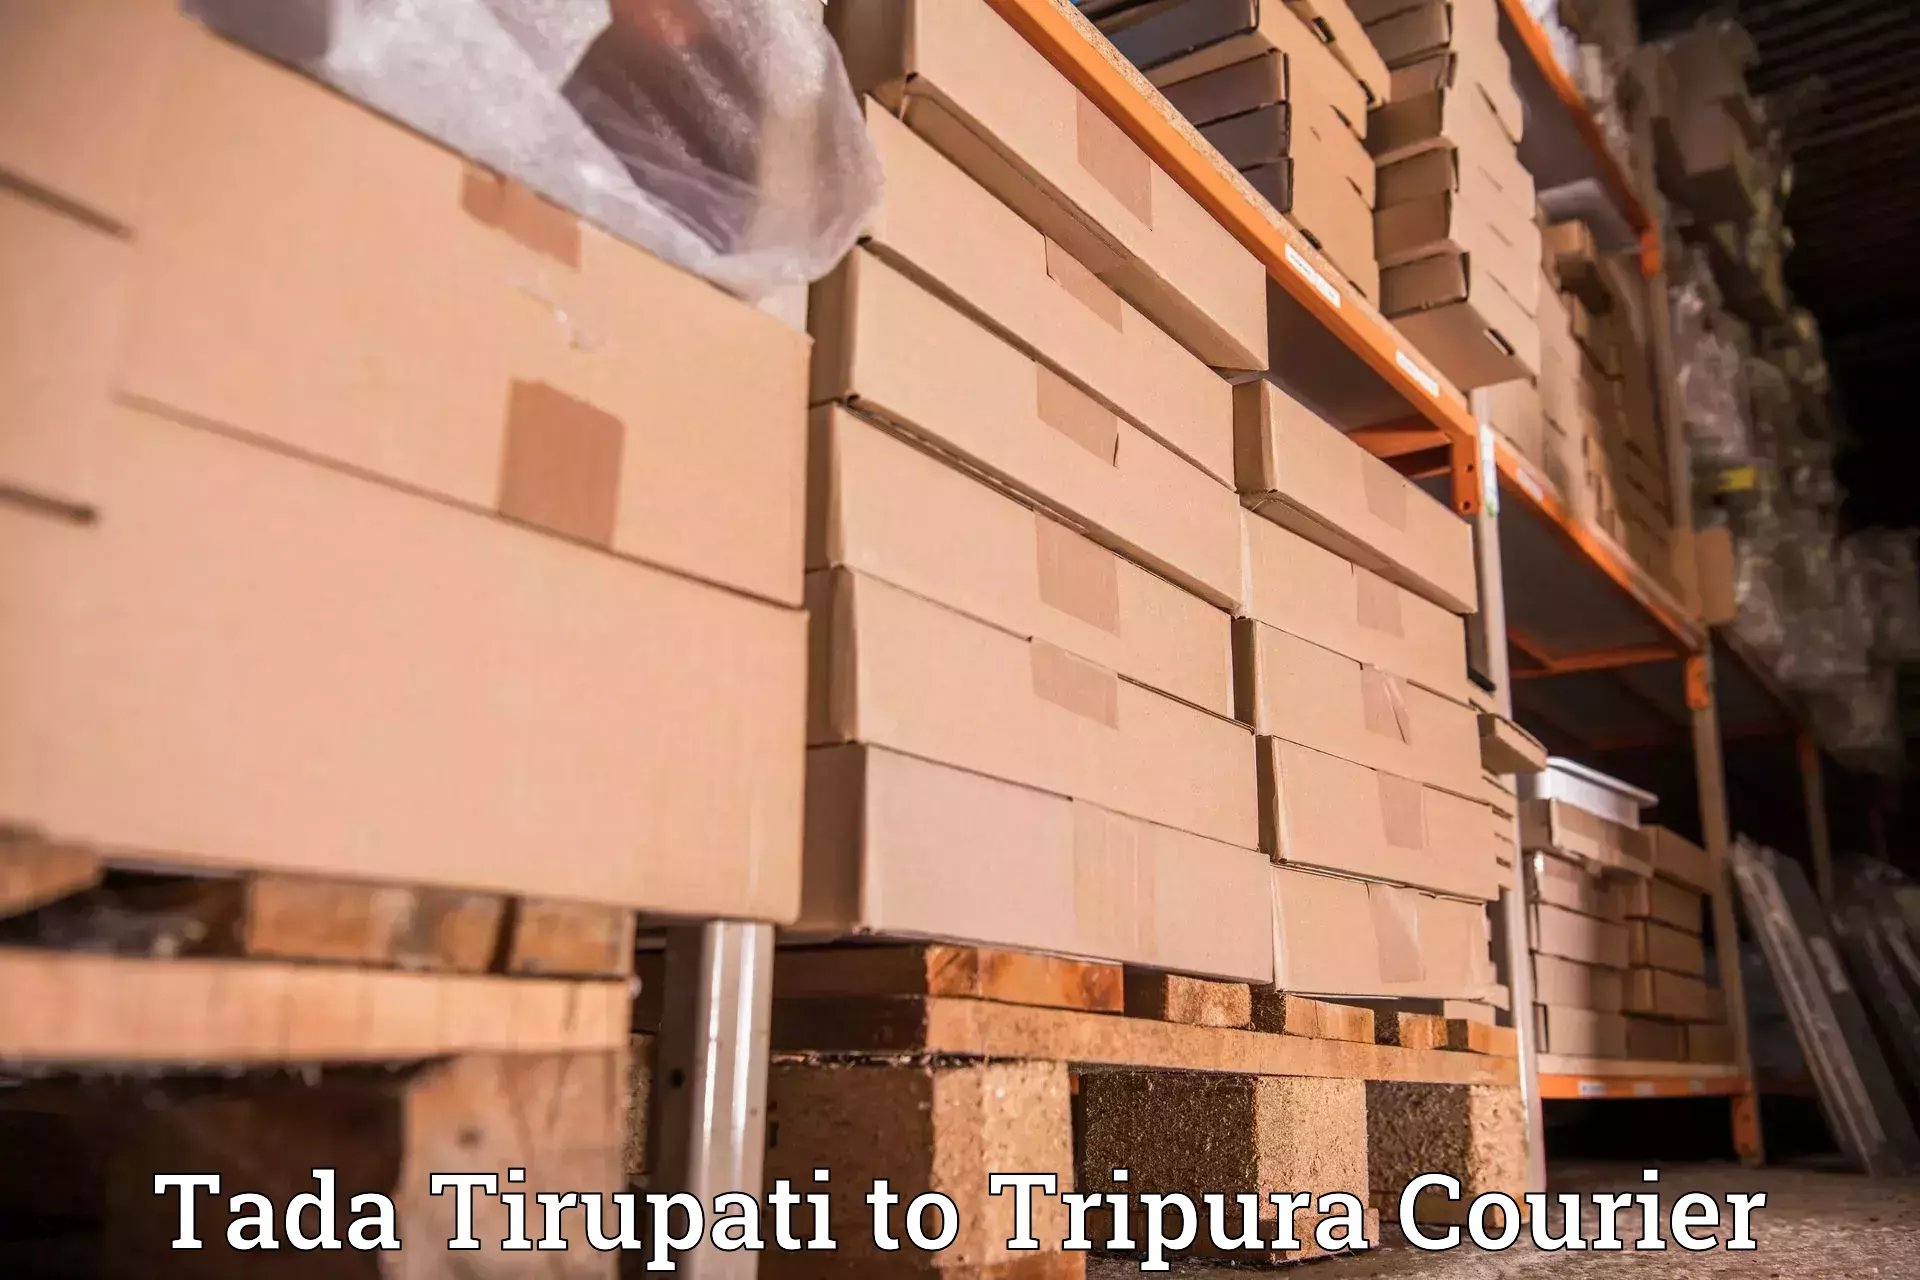 Ocean freight courier Tada Tirupati to Dharmanagar